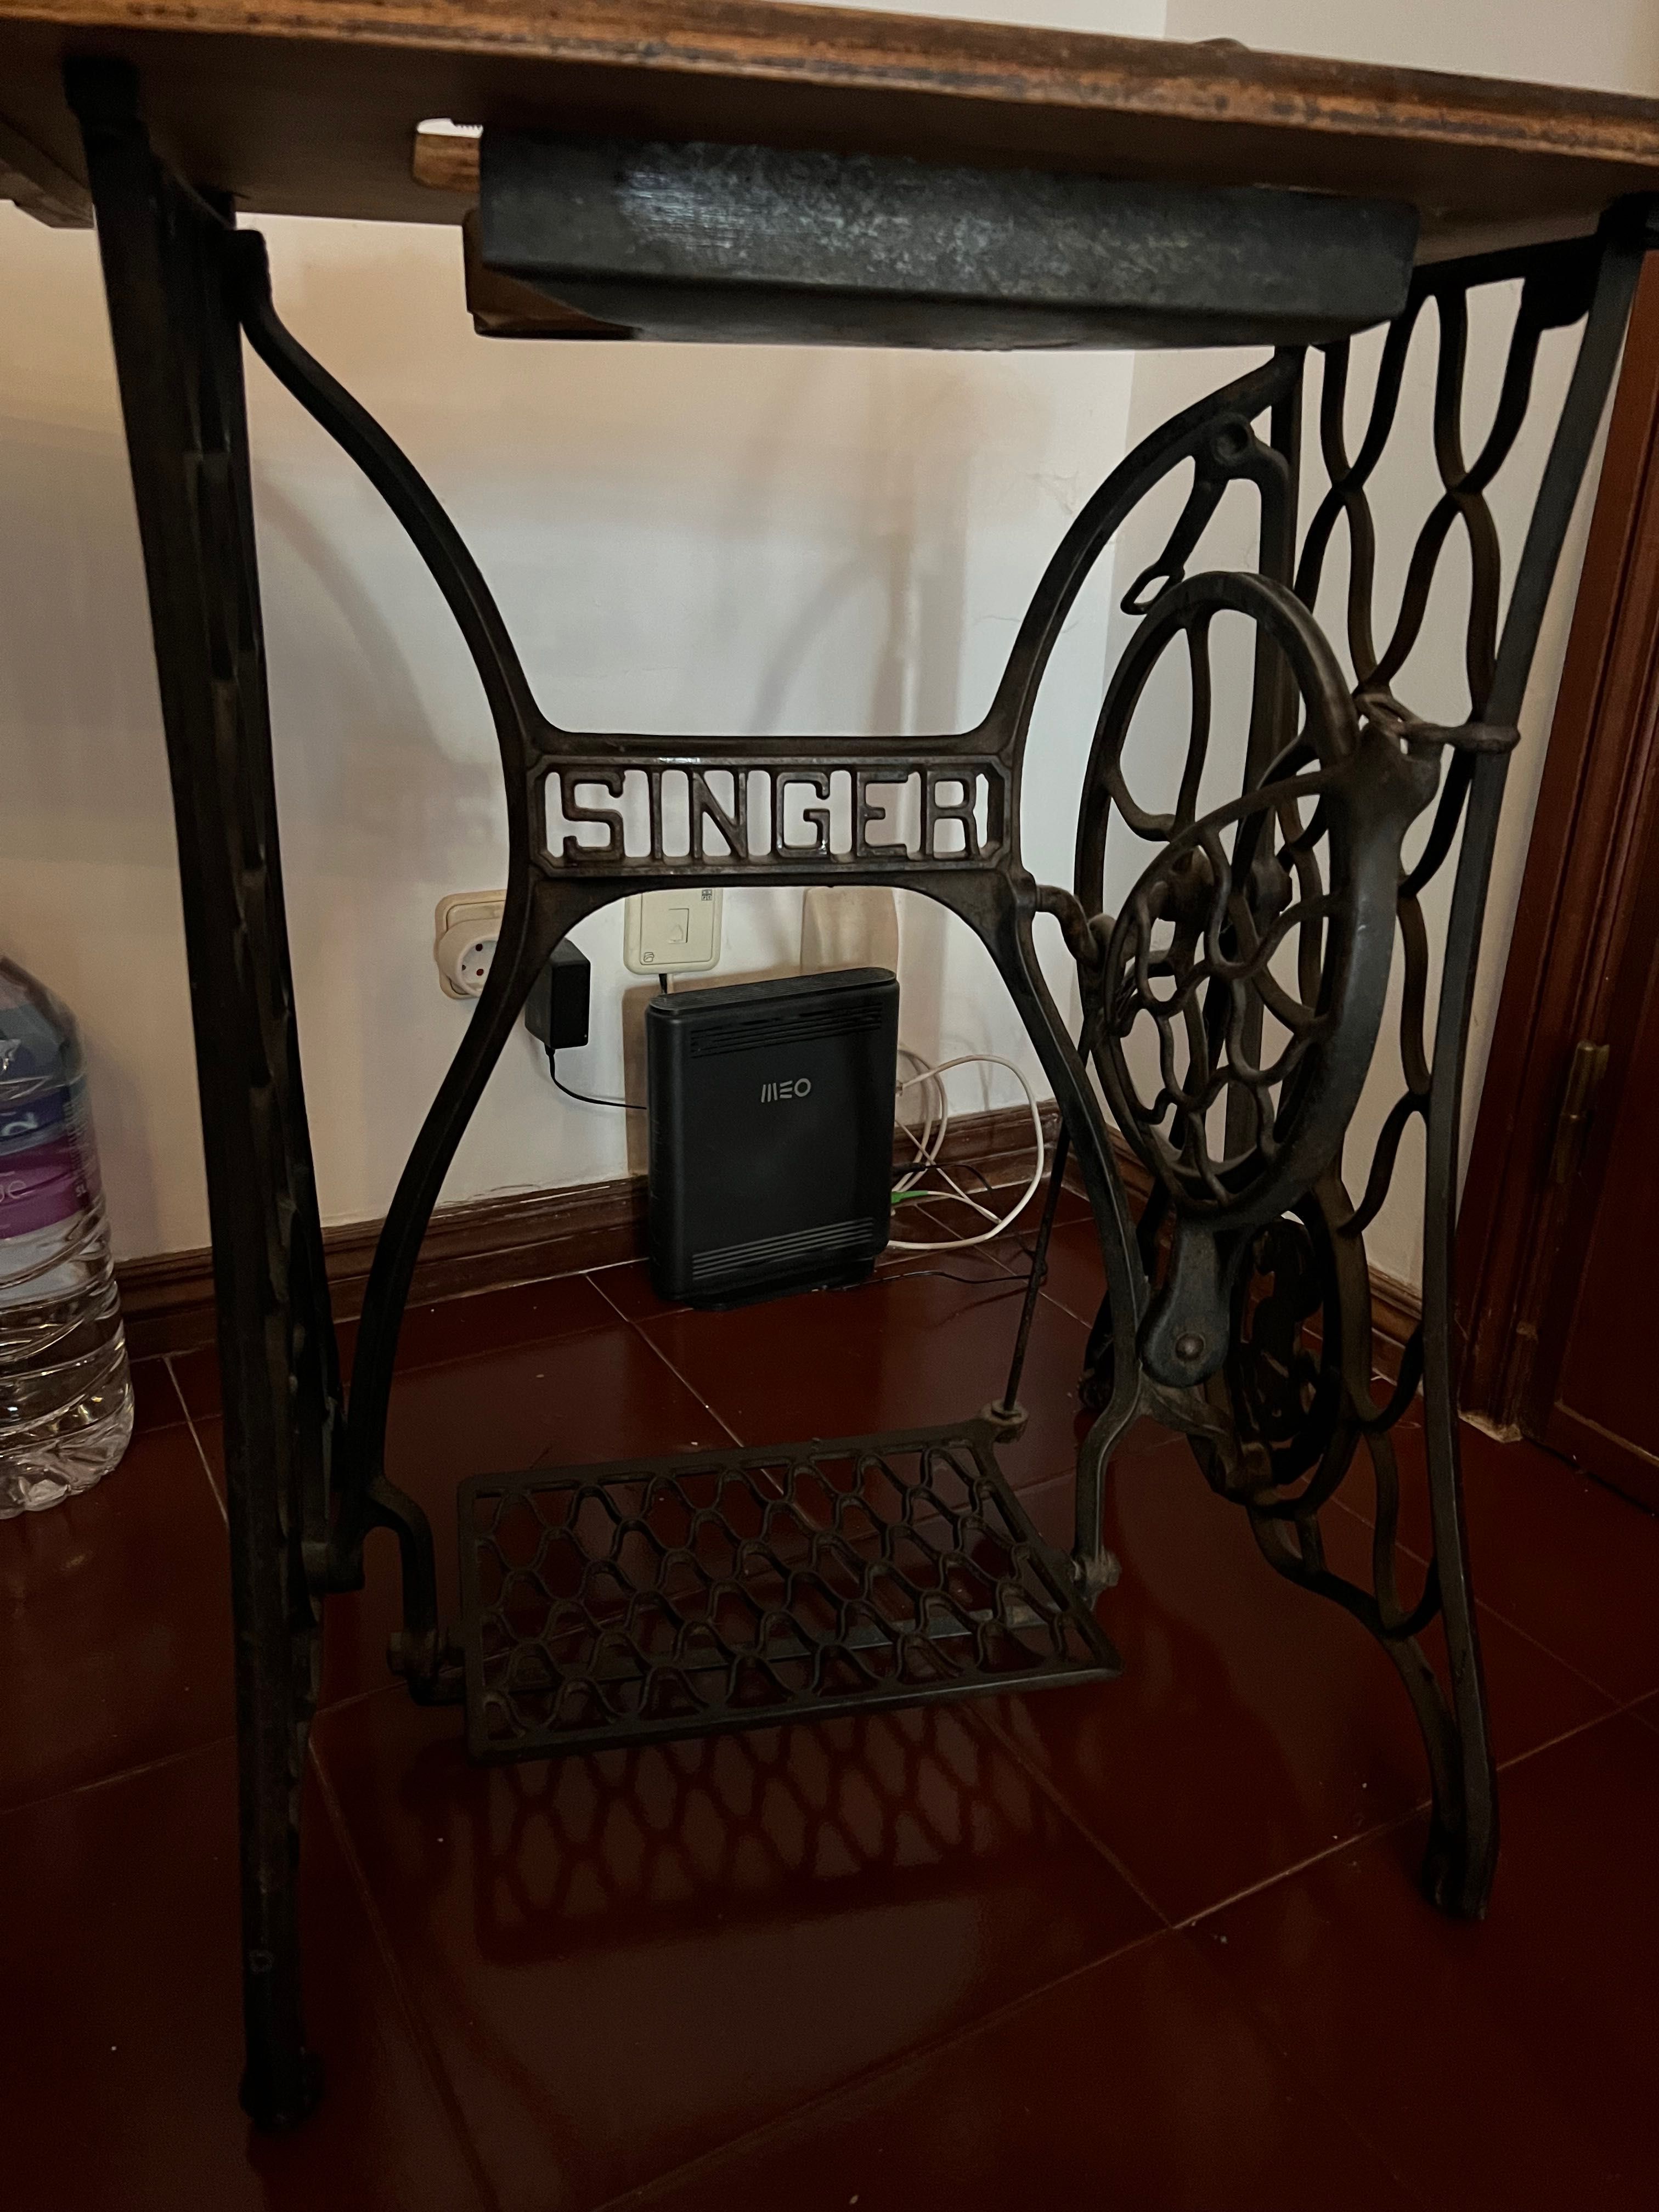 Mesa singer máquina de costura antiga